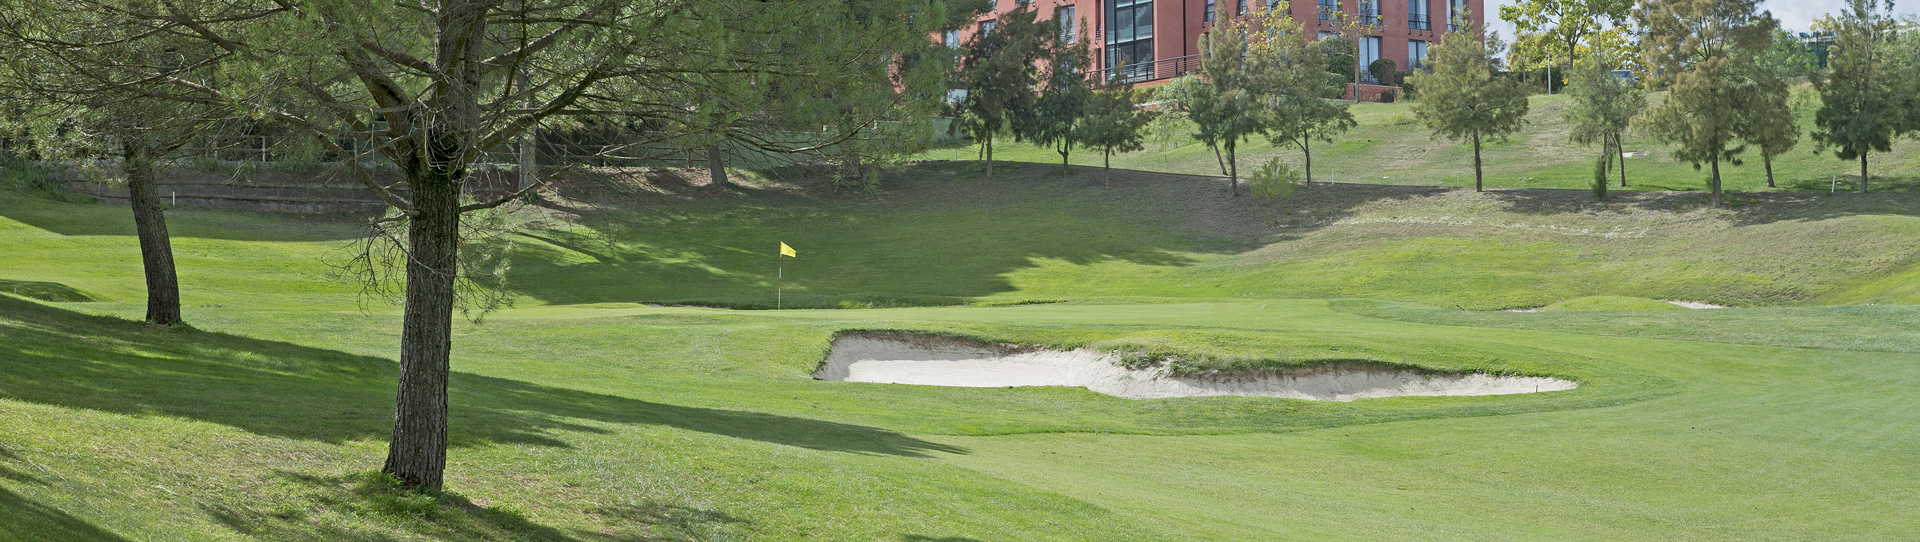 Spain golf courses - Club Golf Barcelona - Photo 3